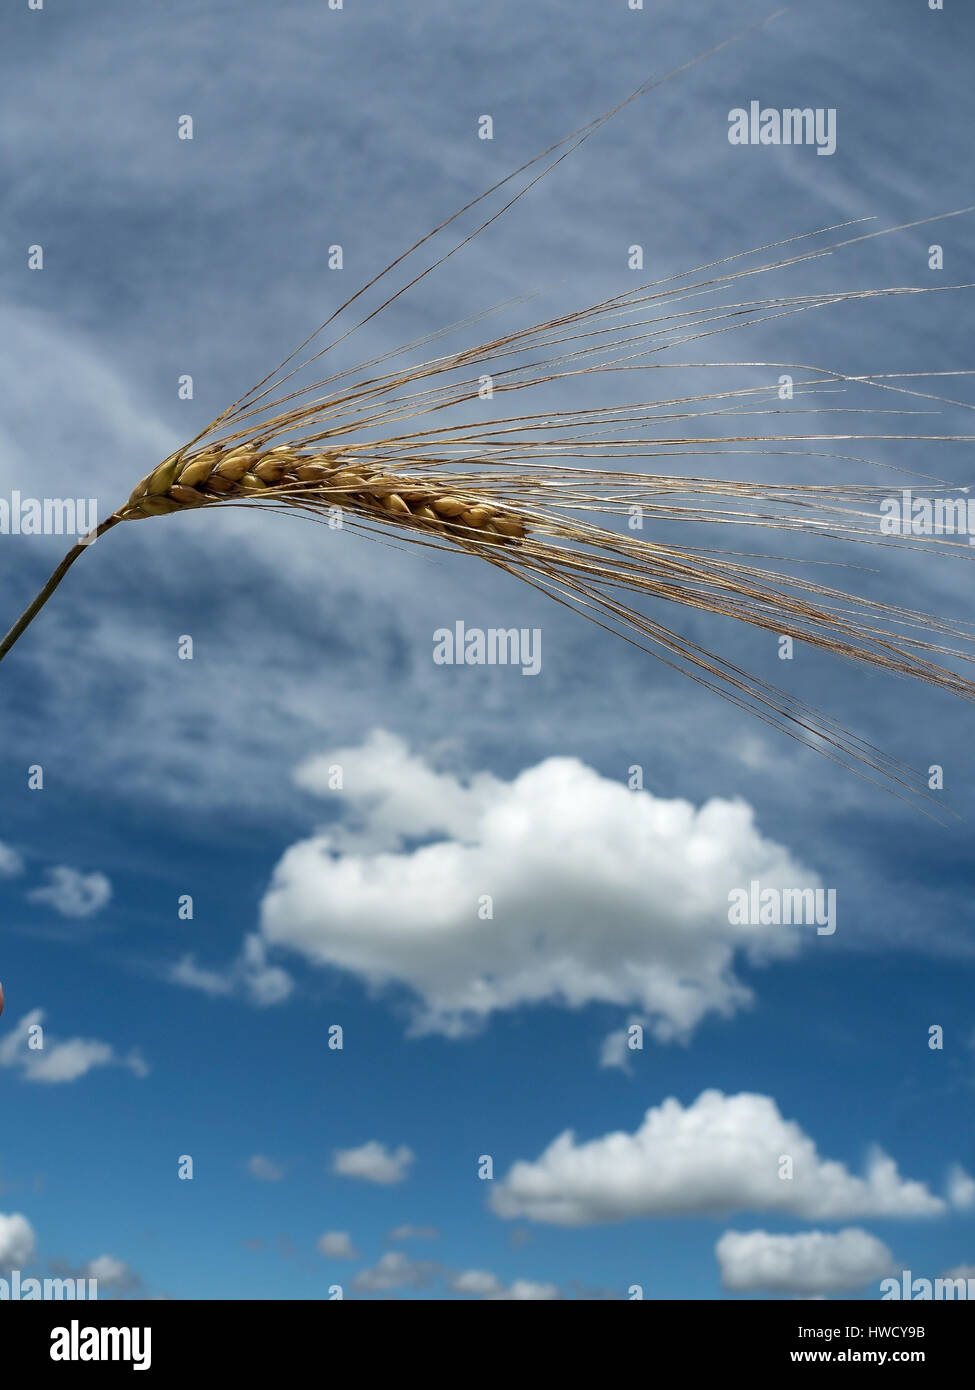 L'oreille du grain d'orge sur un champ de céréales avant la récolte, von Getreideähre Gerste auf einem Getreidefeld vor der Ernte Banque D'Images